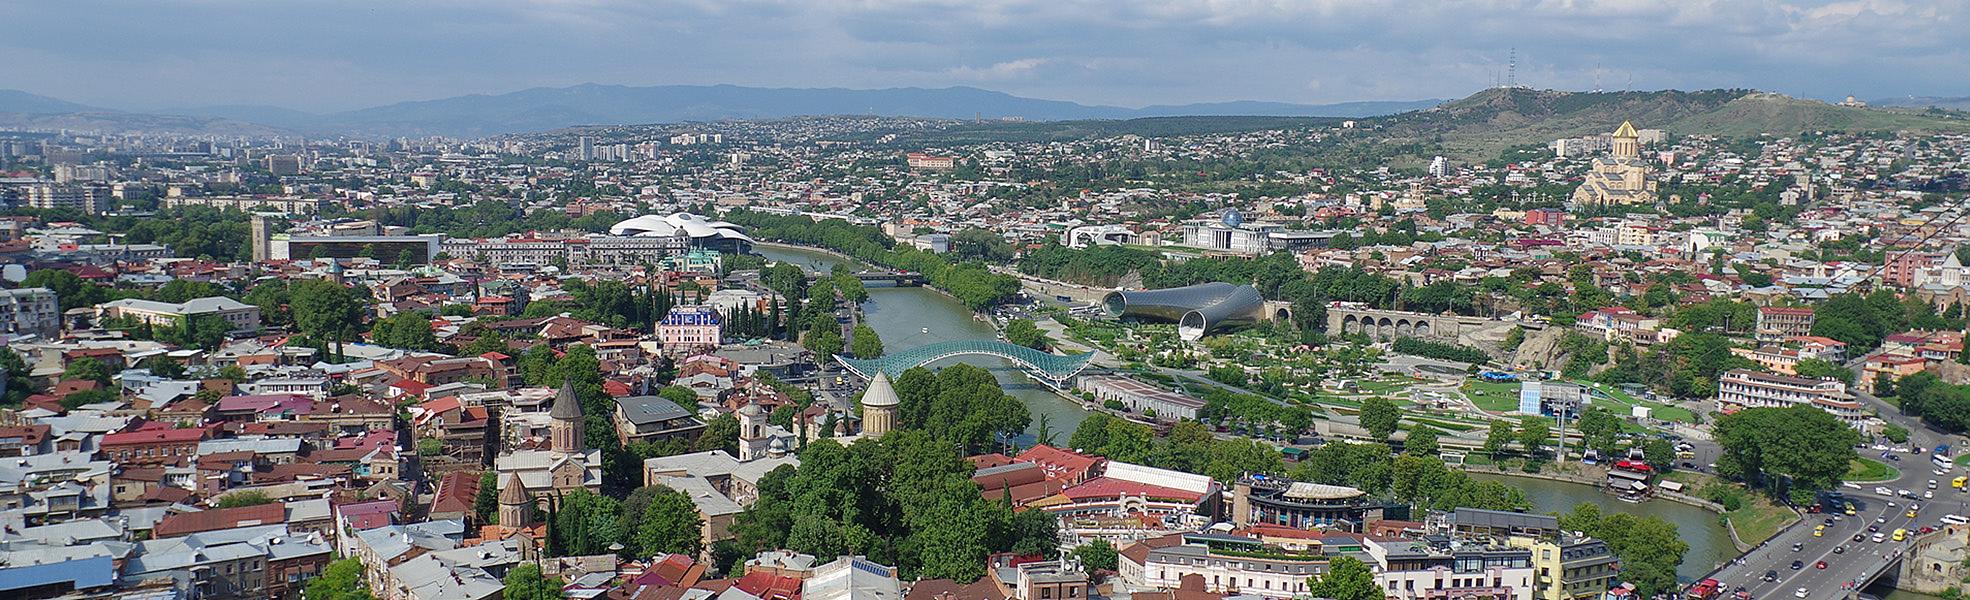 Tbilis City View